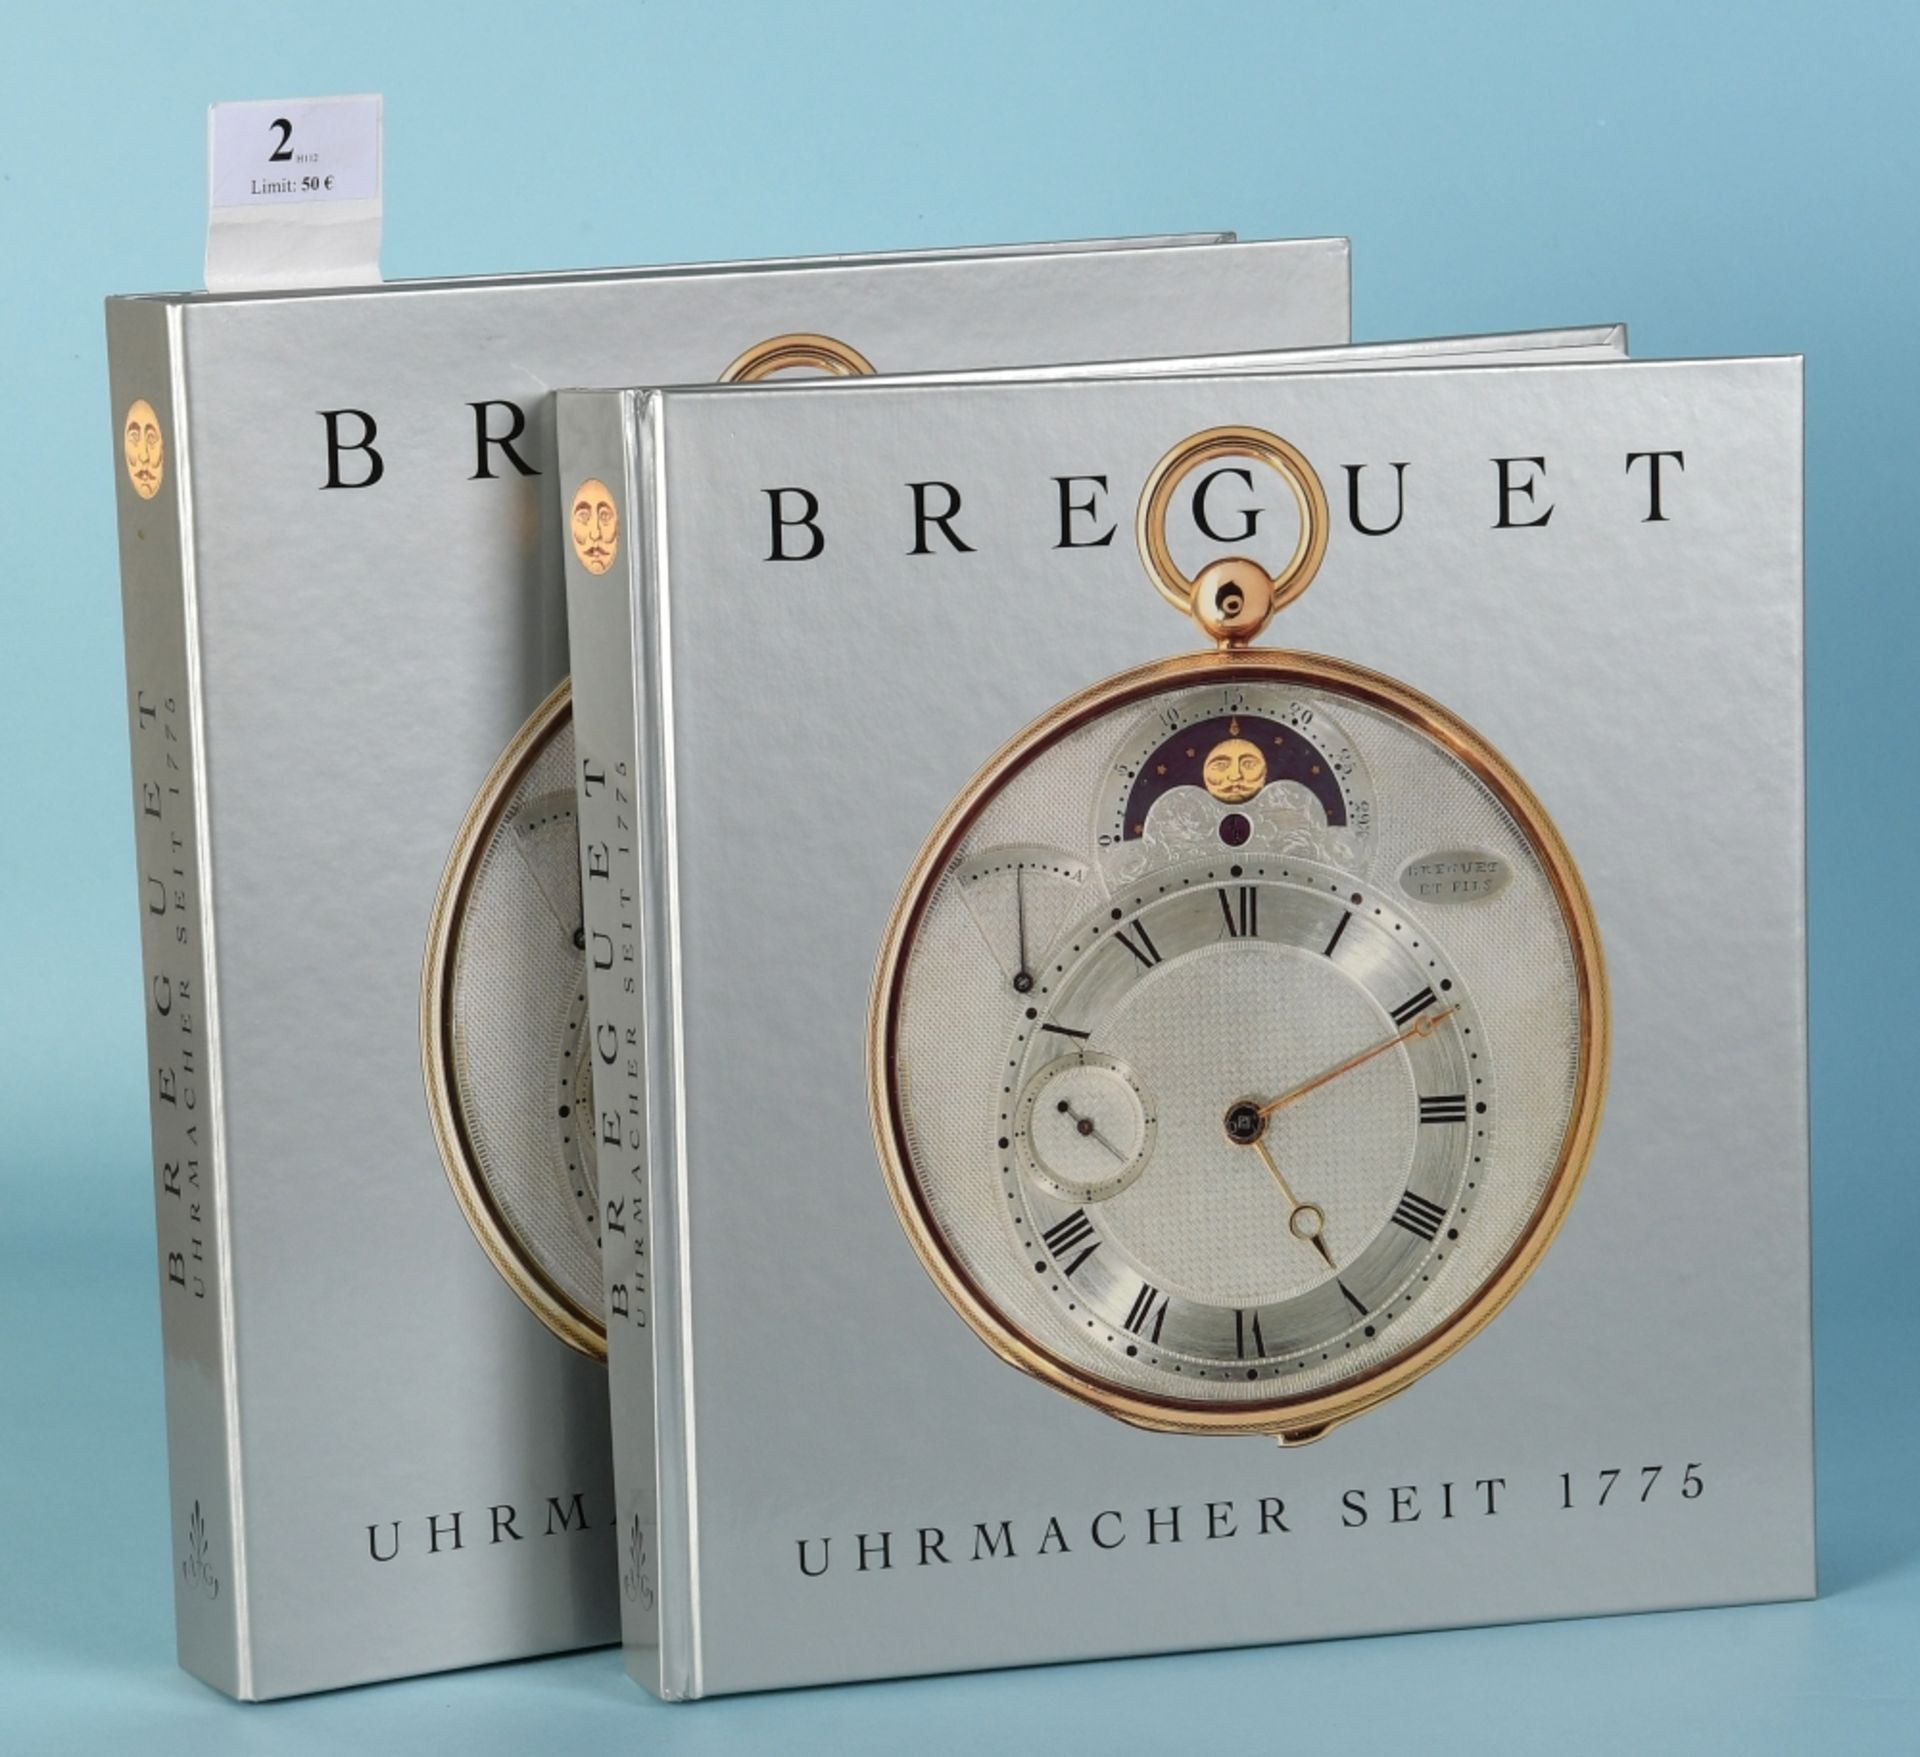 Breguet, Emmanuel "Breguet - Uhrmacher seit 1775"